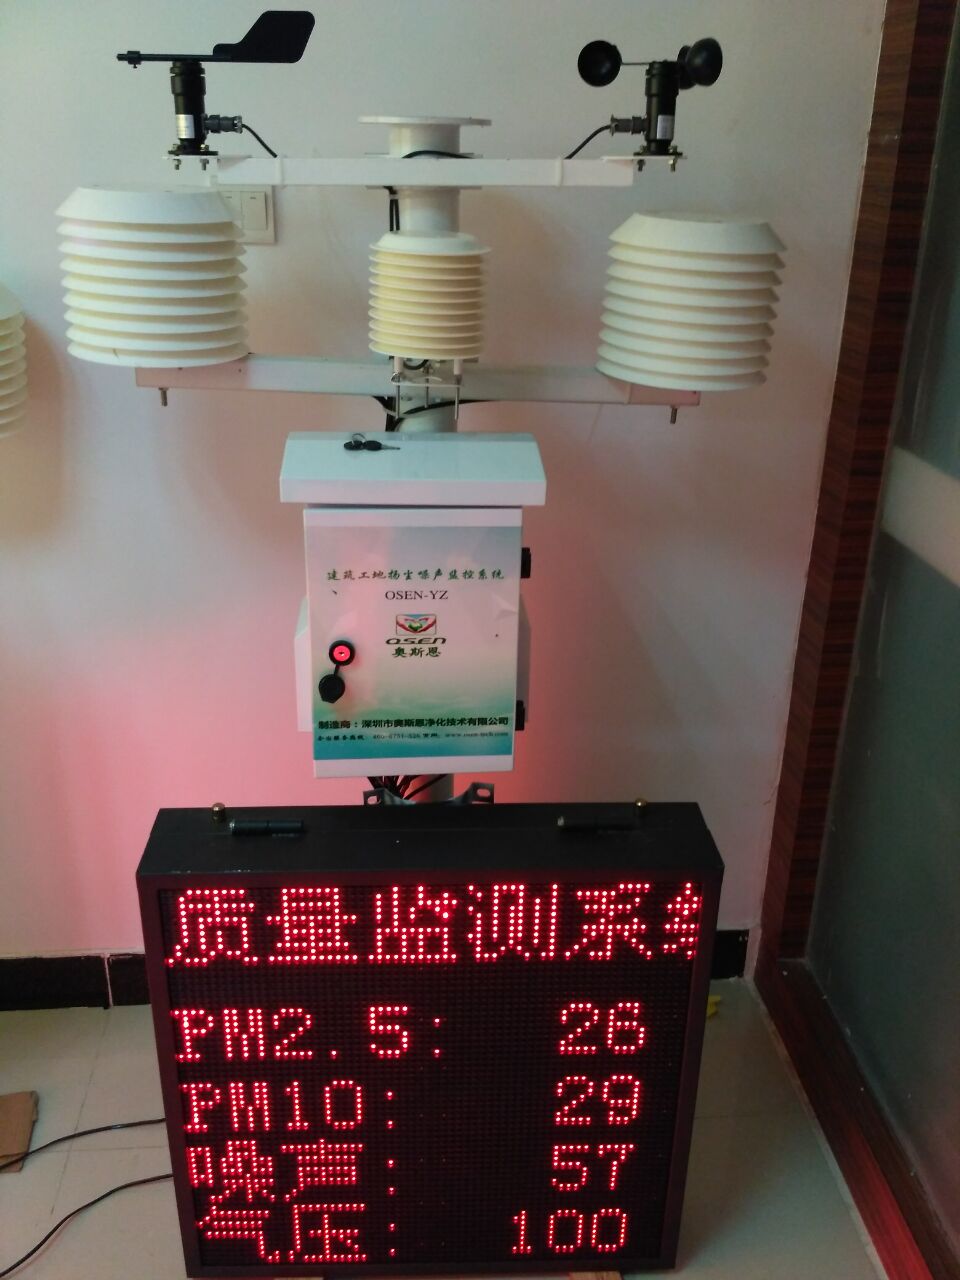 深圳建筑工地扬尘噪声在线监测设备 24小时在线监控 无缝对接国控点